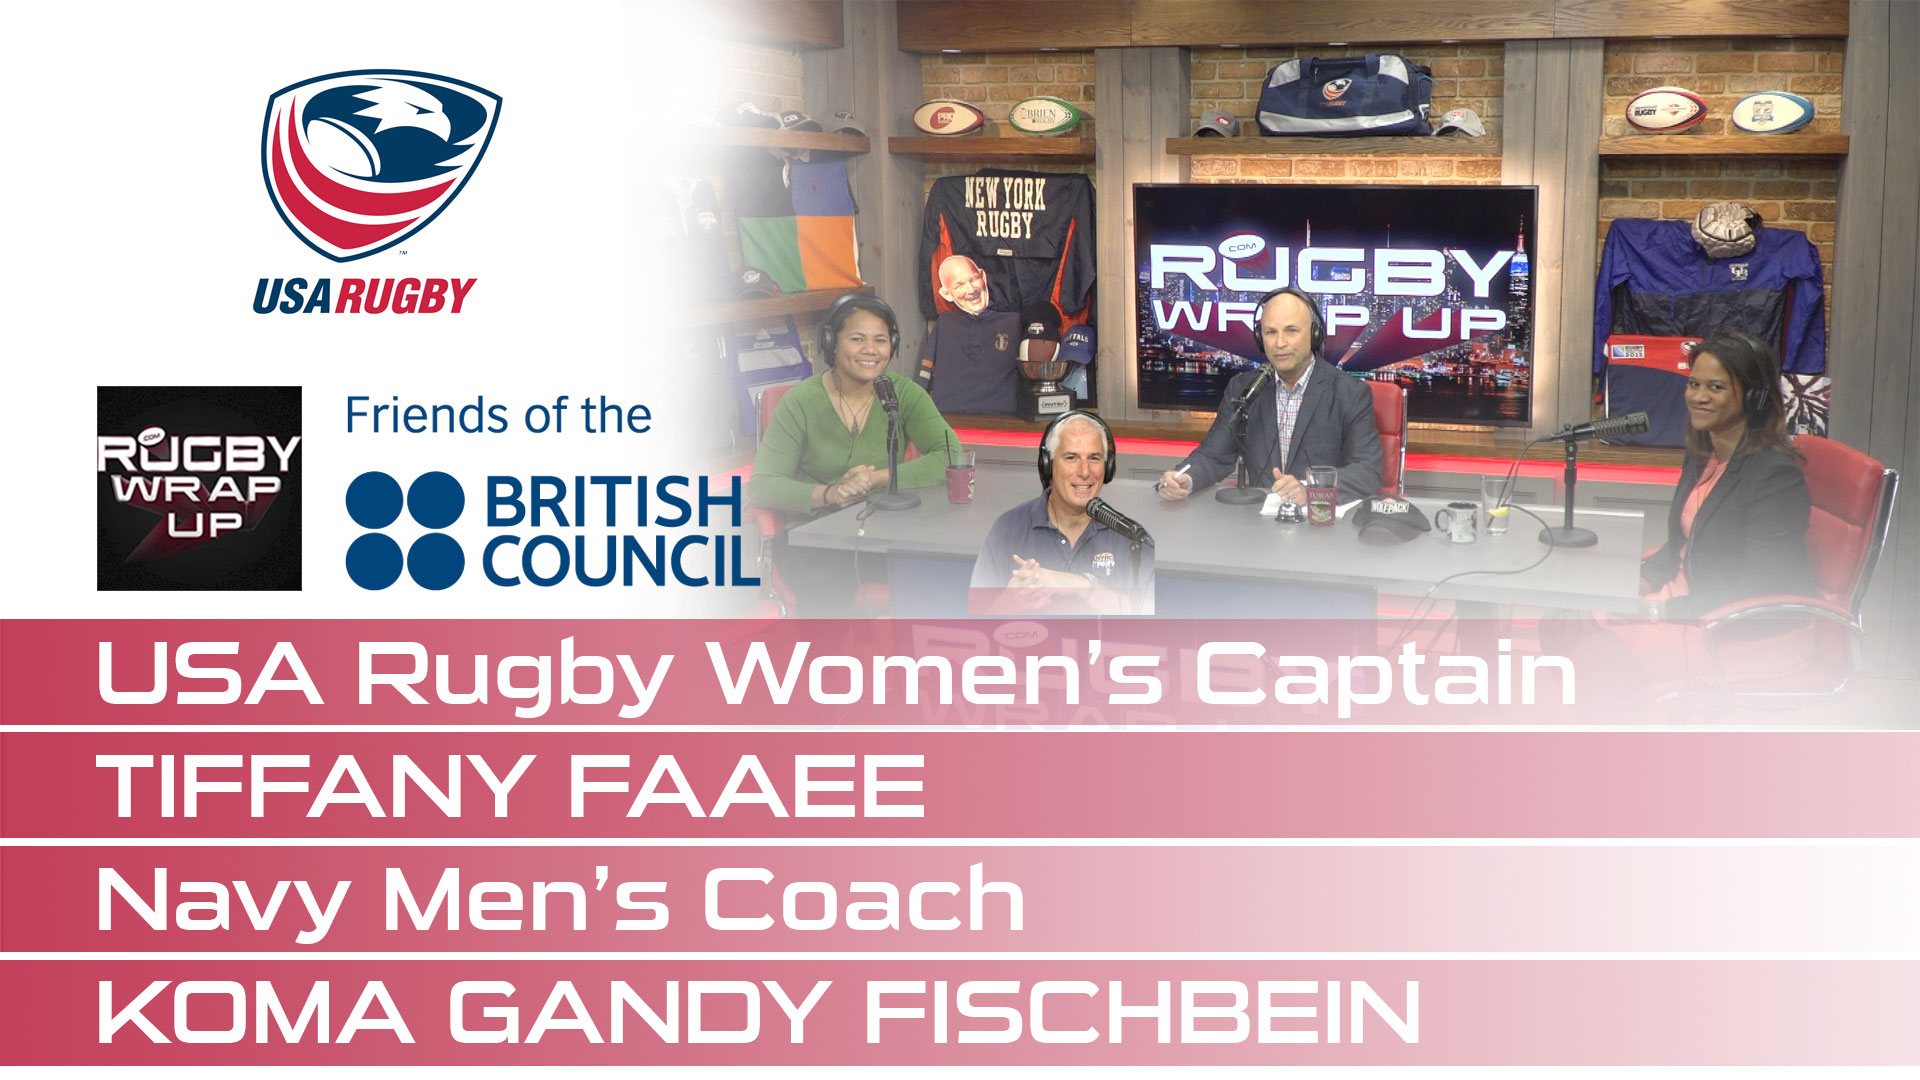 Rugby_Wrap_Up Tiffany_Faaee Troy_Benson Koma_Gandy_Fishbein Matt_McCarthy